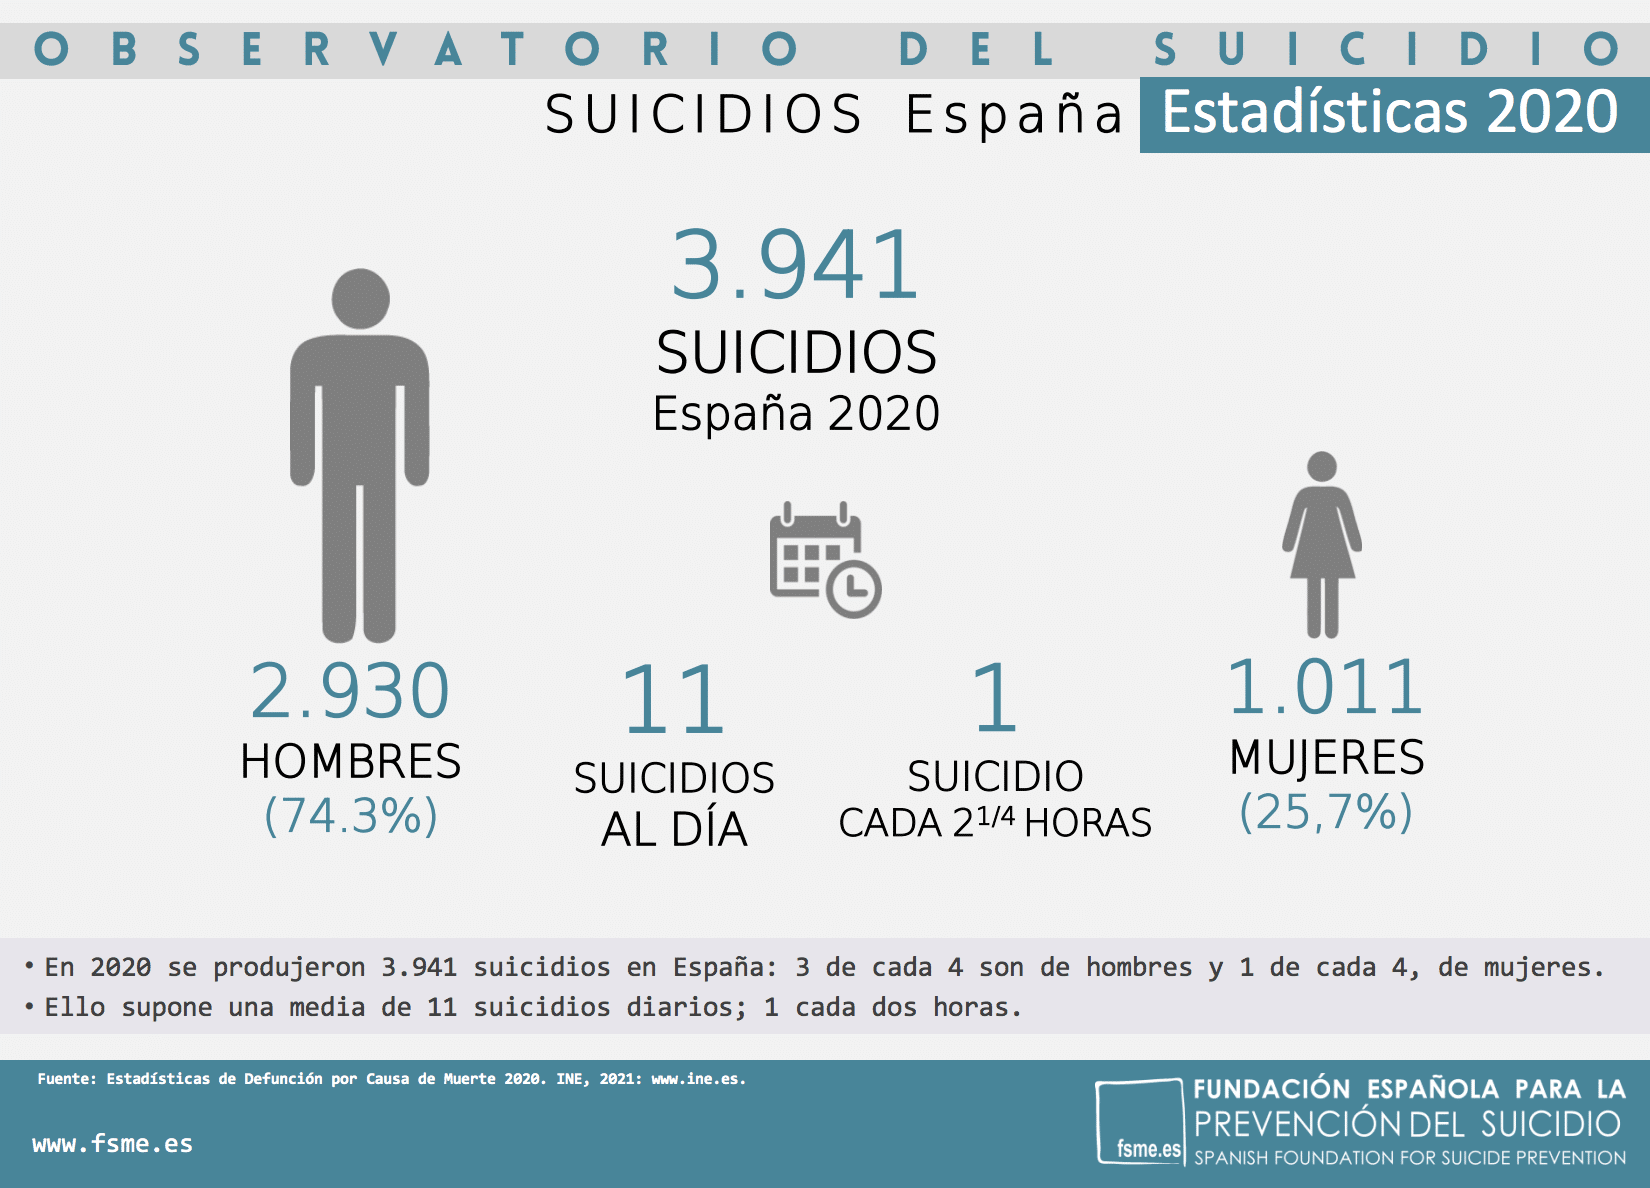 abortar Rechazo Gracias Hablar del suicidio para abordar su prevención: En 2020 en España se  suicidaron 3.941 personas, 11 al día - Confilegal